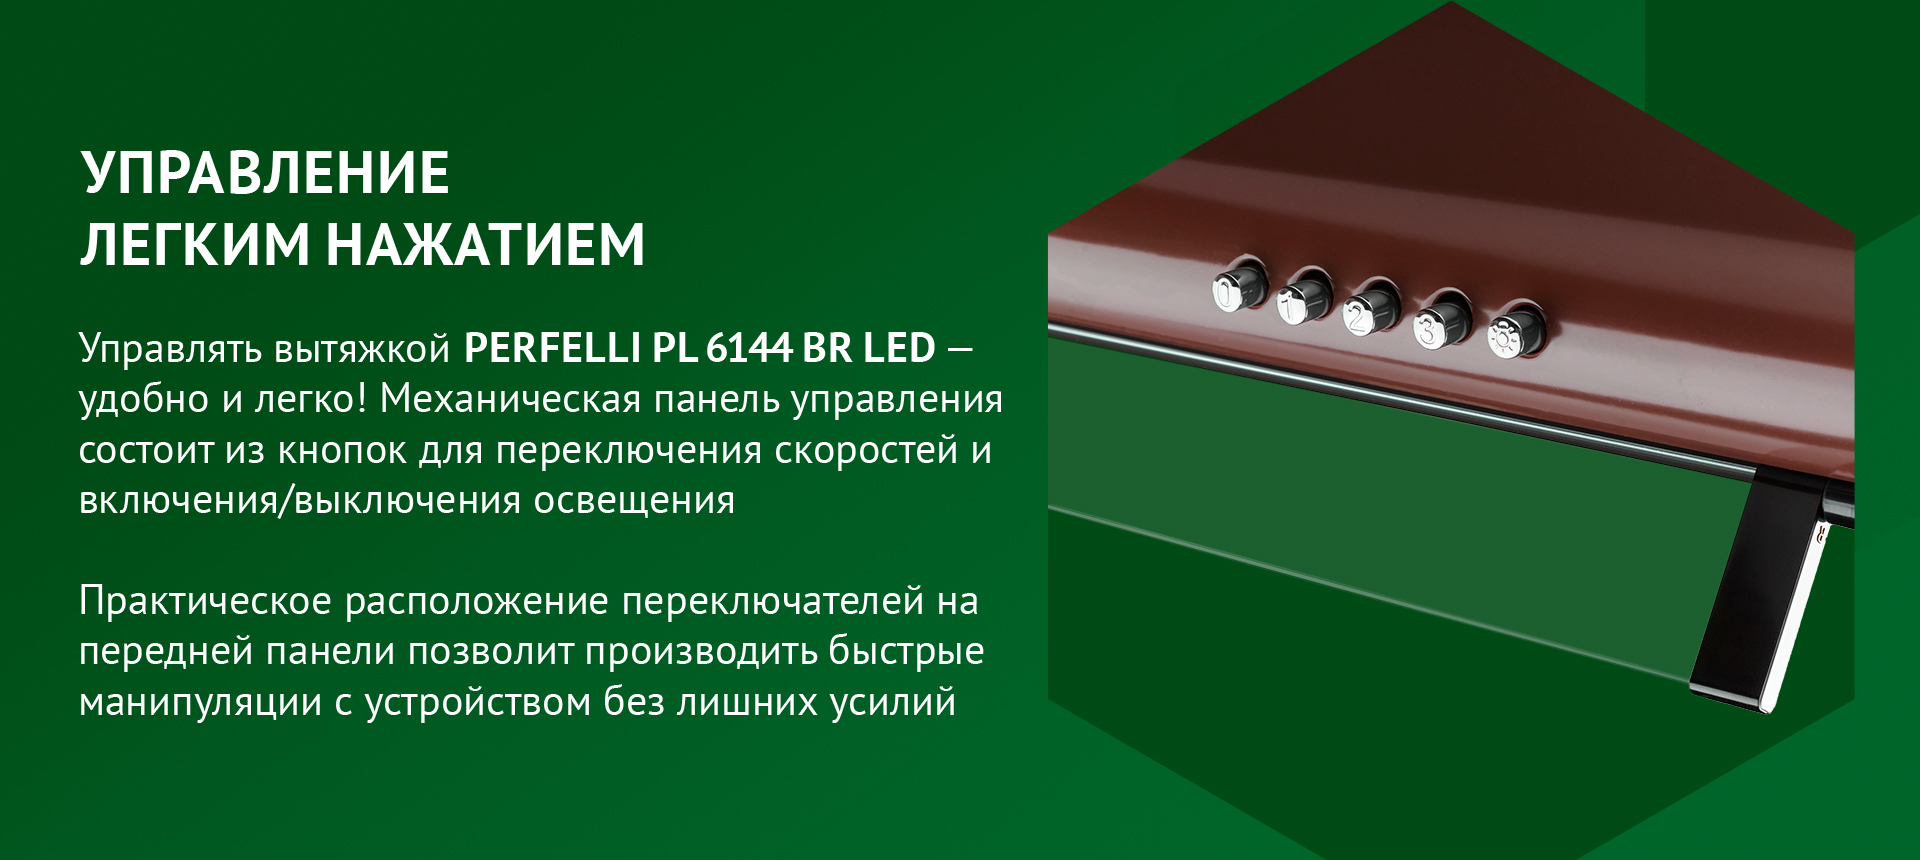 Управлять вытяжкой PERFELLI PL 6144 BR LED – удобно и легко! Механическая панель управления состоит из кнопок для переключения скоростей и включения/выключения освещения. Практическое расположение переключателей на передней панели позволит производить быстрые манипуляции с устройством без лишних усилий